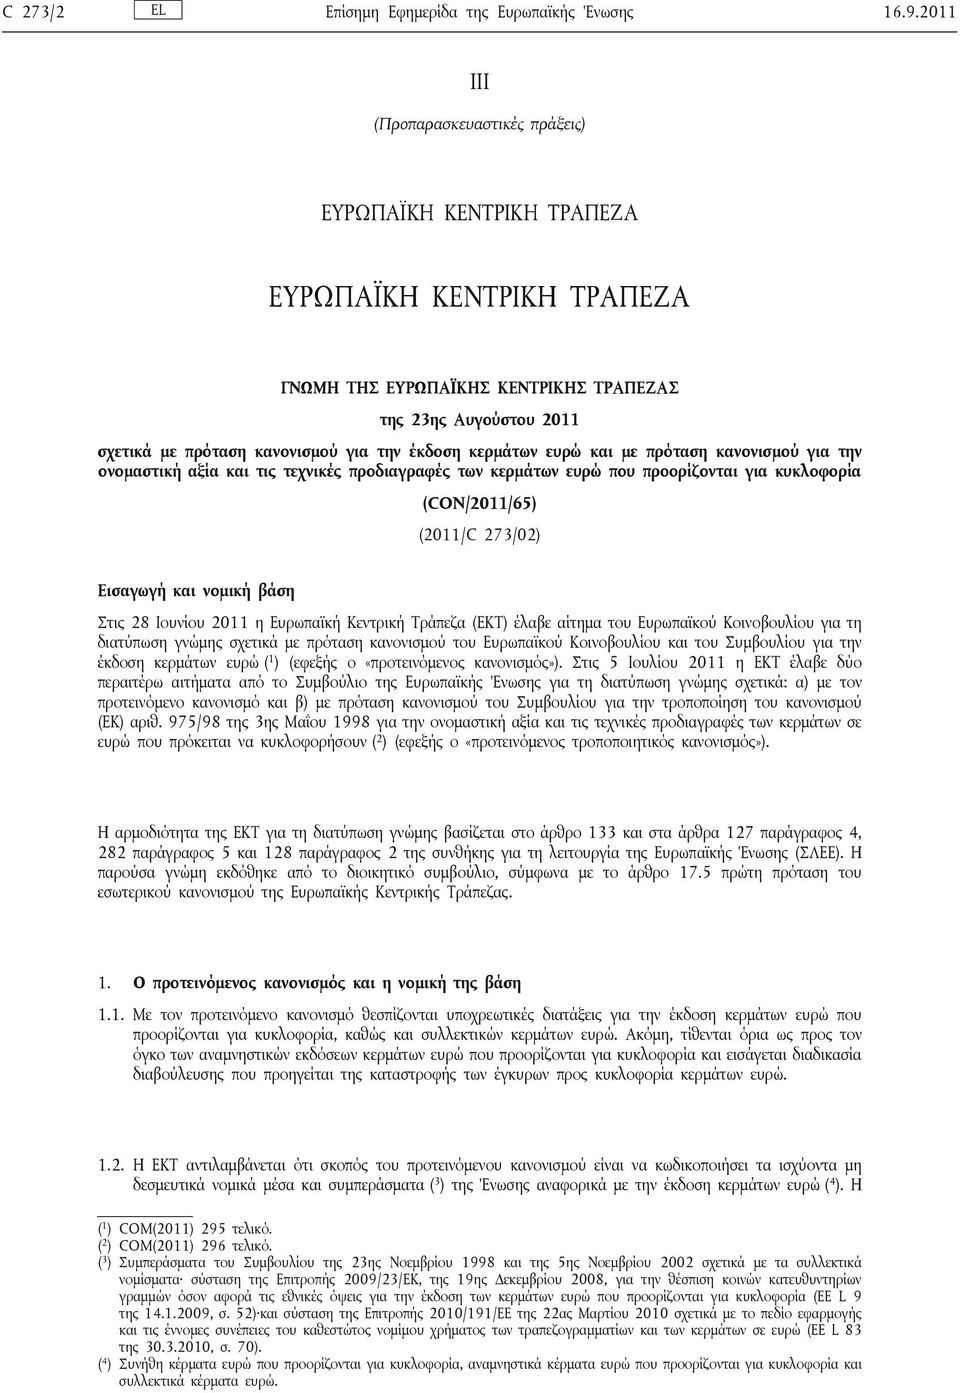 έκδοση κερμάτων ευρώ και με πρόταση κανονισμού για την ονομαστική αξία και τις τεχνικές προδιαγραφές των κερμάτων ευρώ που προορίζονται για κυκλοφορία (CON/2011/65) (2011/C 273/02) Εισαγωγή και